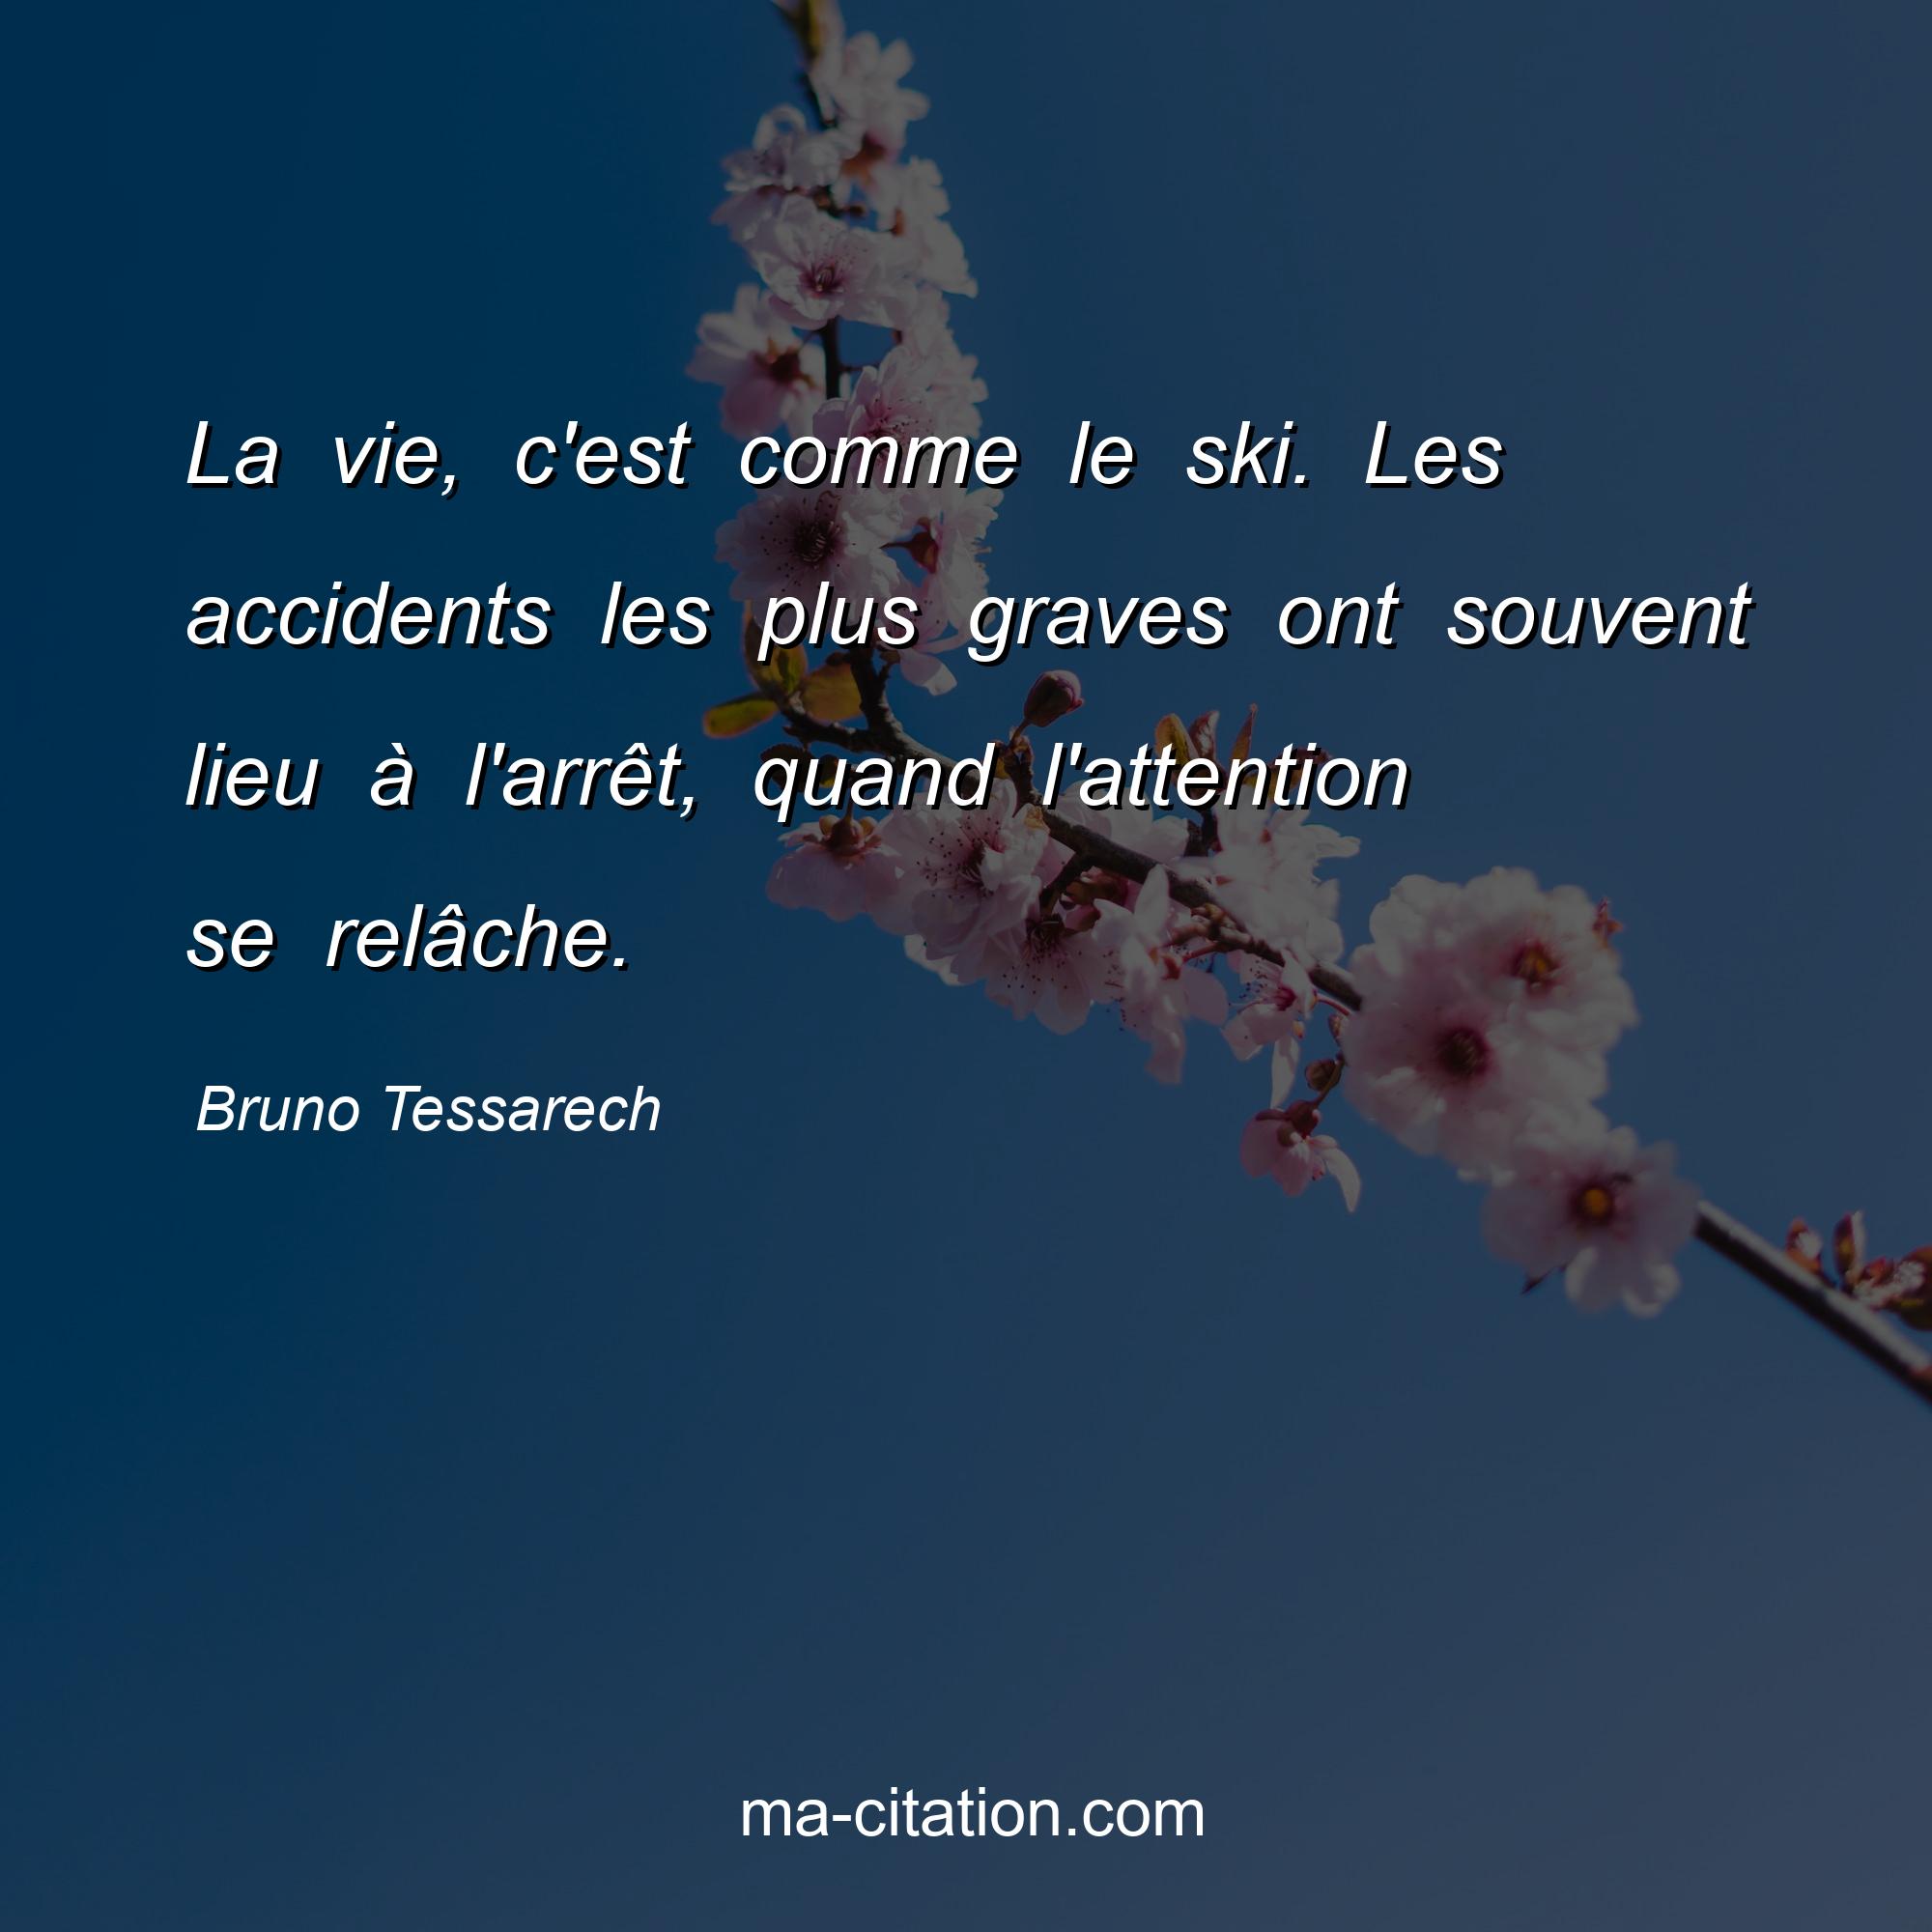 Bruno Tessarech : La vie, c'est comme le ski. Les accidents les plus graves ont souvent lieu à l'arrêt, quand l'attention se relâche.